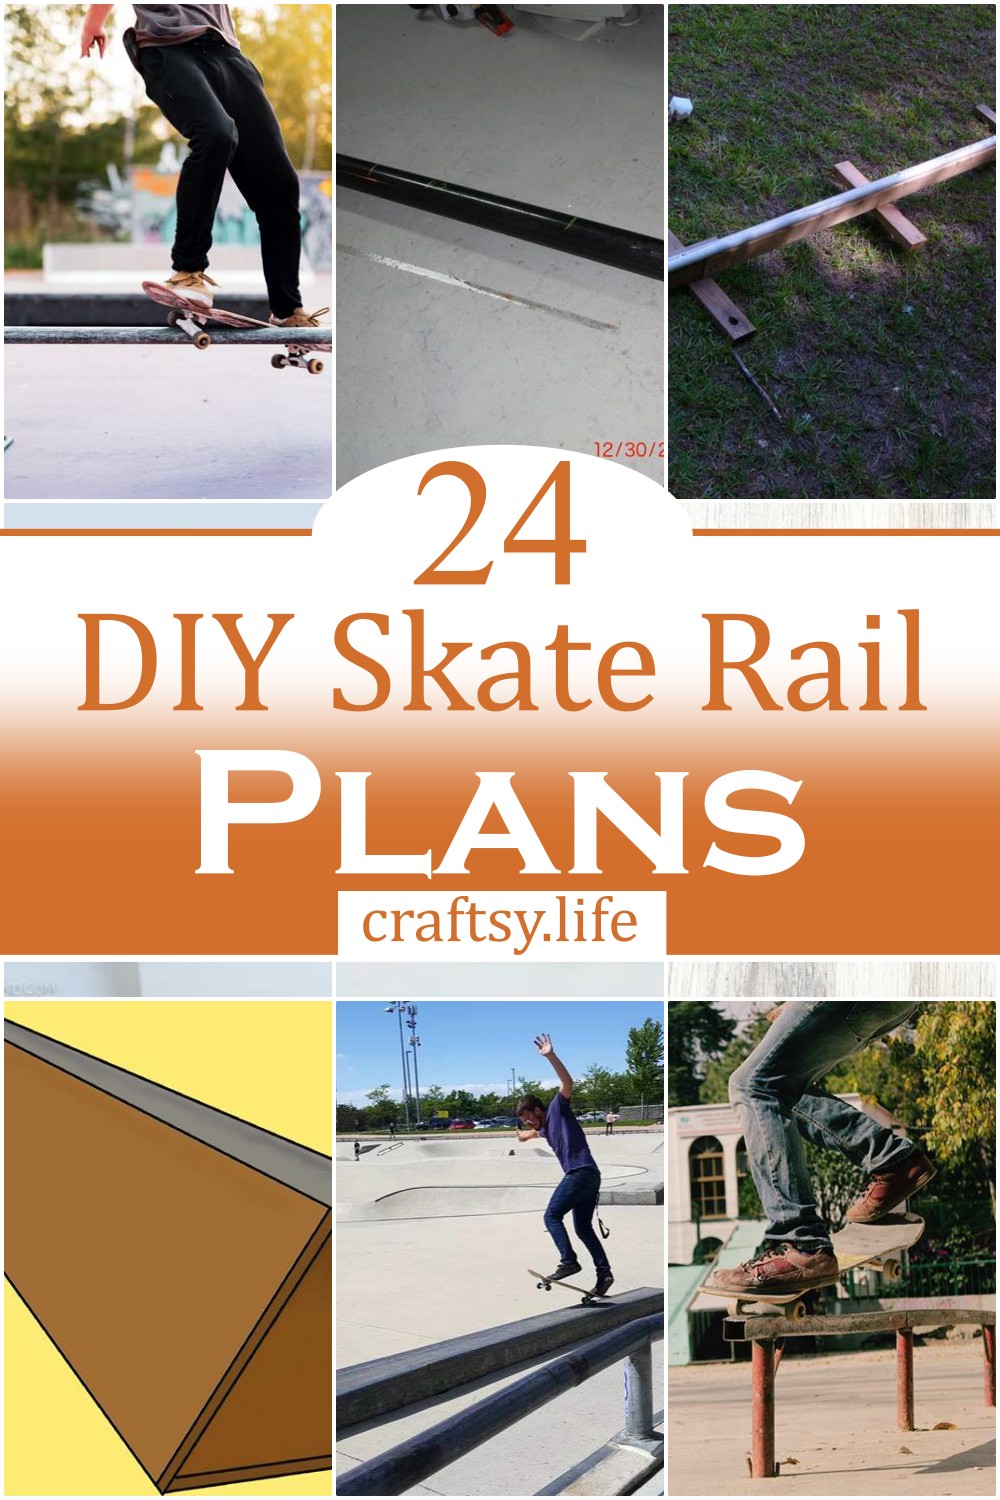 DIY Skate Rail Plans